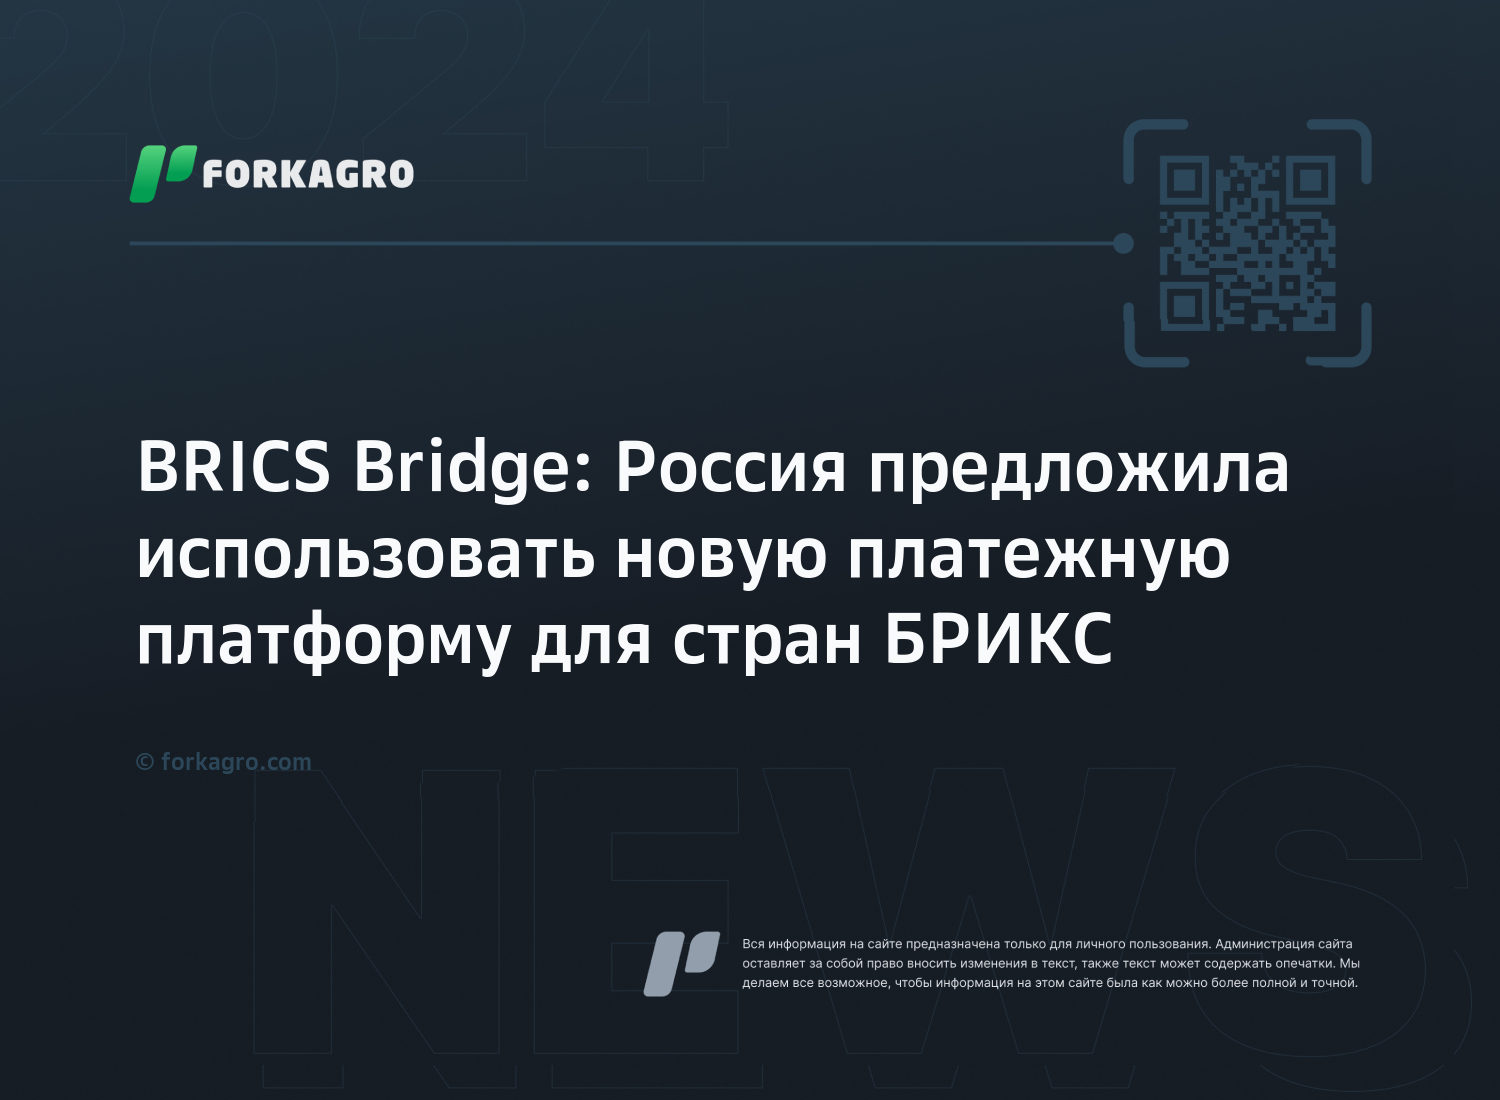 BRICS Bridge: Россия предложила использовать новую платежную платформу для стран БРИКС